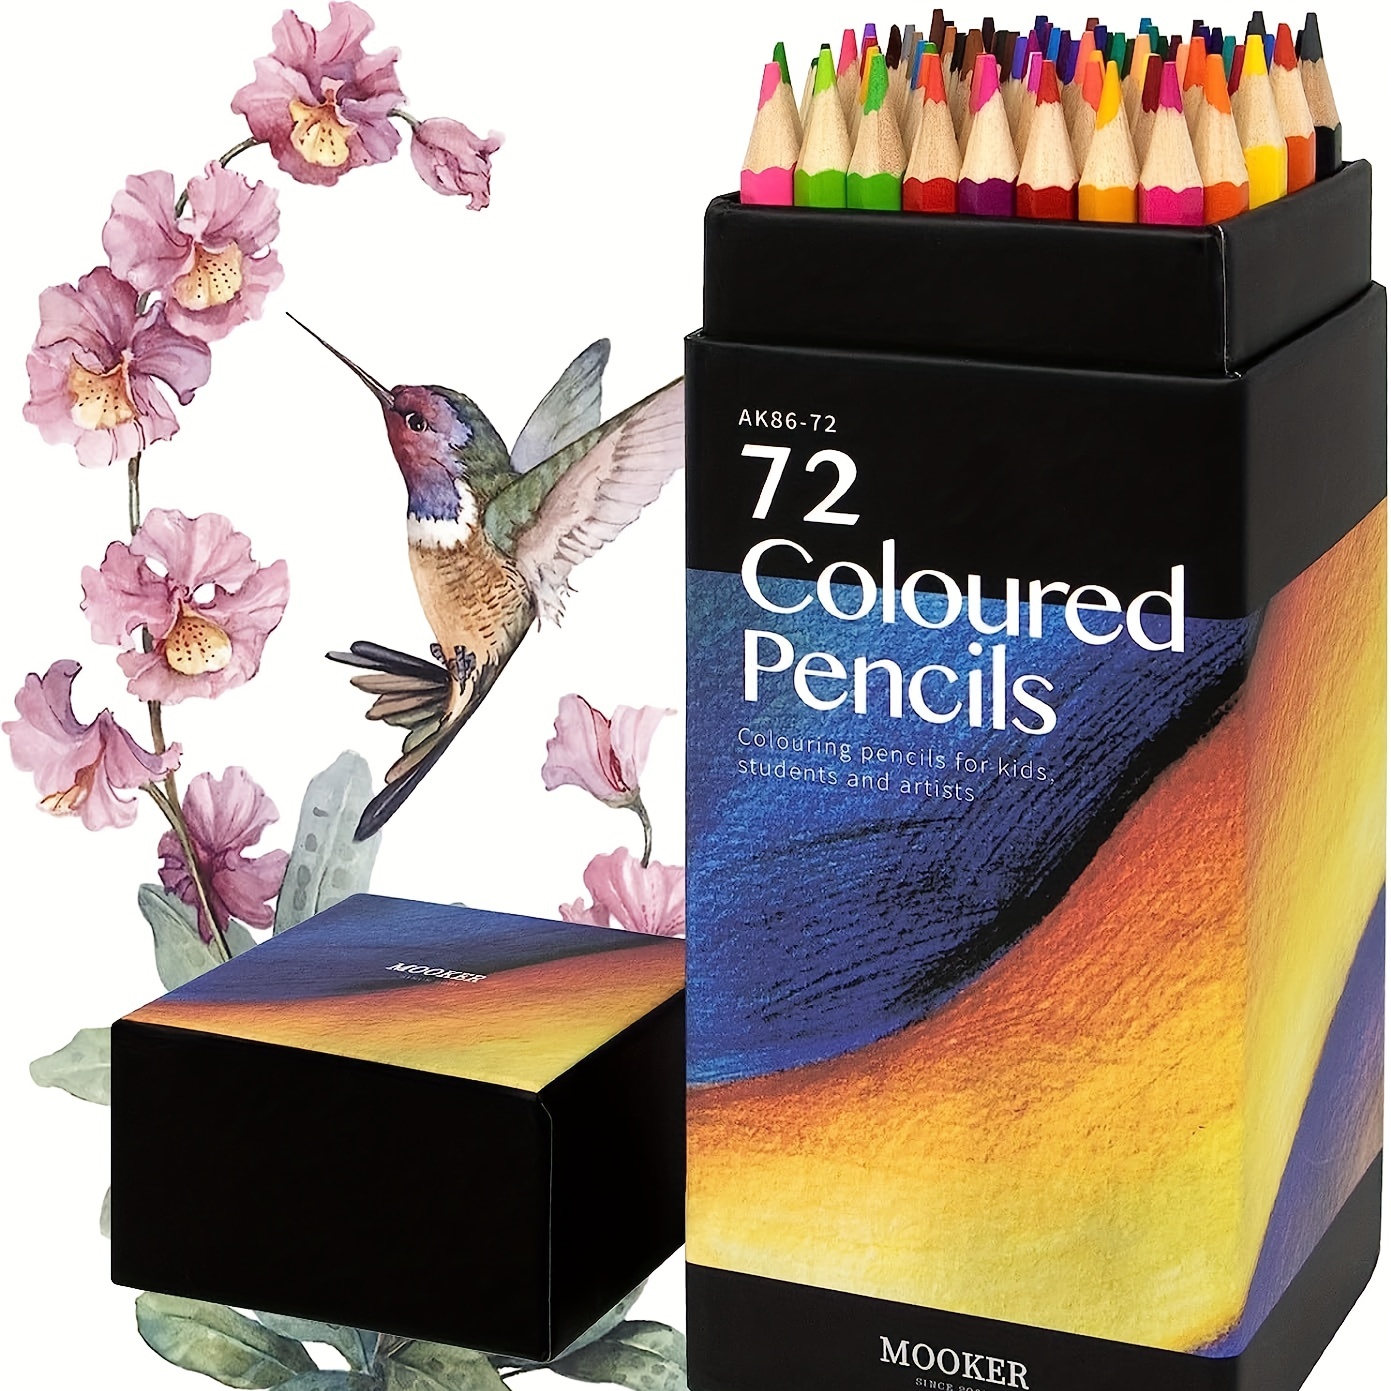 160 Lápices de Colores- Almacenamiento Fácil - Estuche de Lapices de Colores  Profesional Adulto…